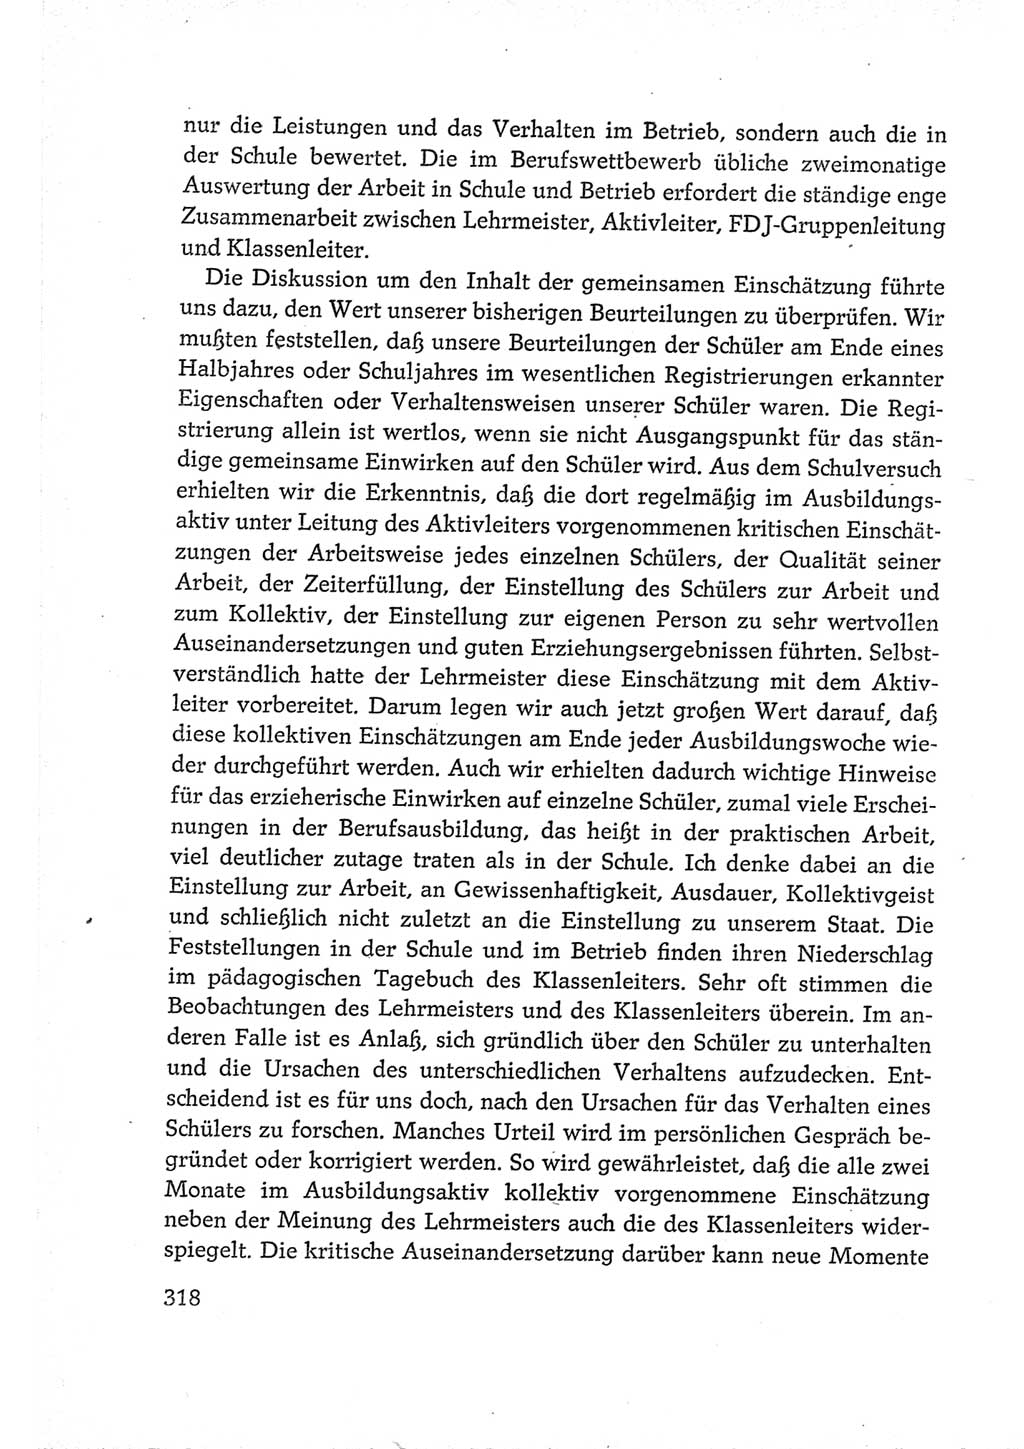 Protokoll der Verhandlungen des Ⅵ. Parteitages der Sozialistischen Einheitspartei Deutschlands (SED) [Deutsche Demokratische Republik (DDR)] 1963, Band Ⅲ, Seite 318 (Prot. Verh. Ⅵ. PT SED DDR 1963, Bd. Ⅲ, S. 318)